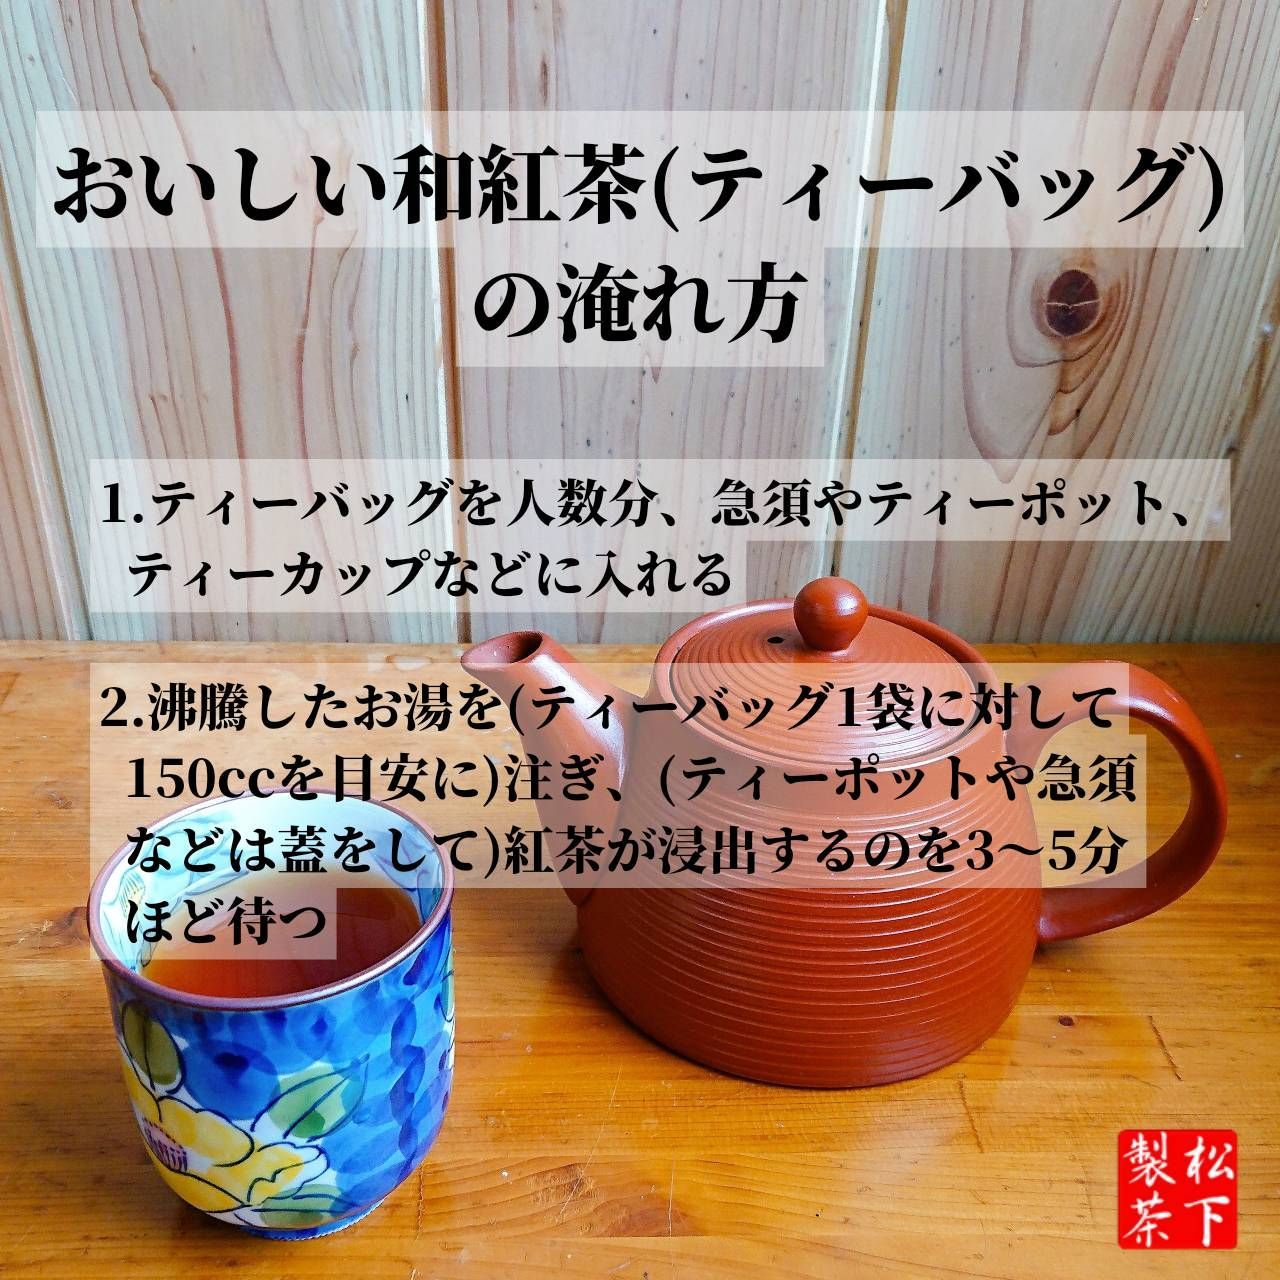 種子島の和紅茶ティーバッグ 飲み比べセット 15g(2.5g×6袋入り)×6本-6